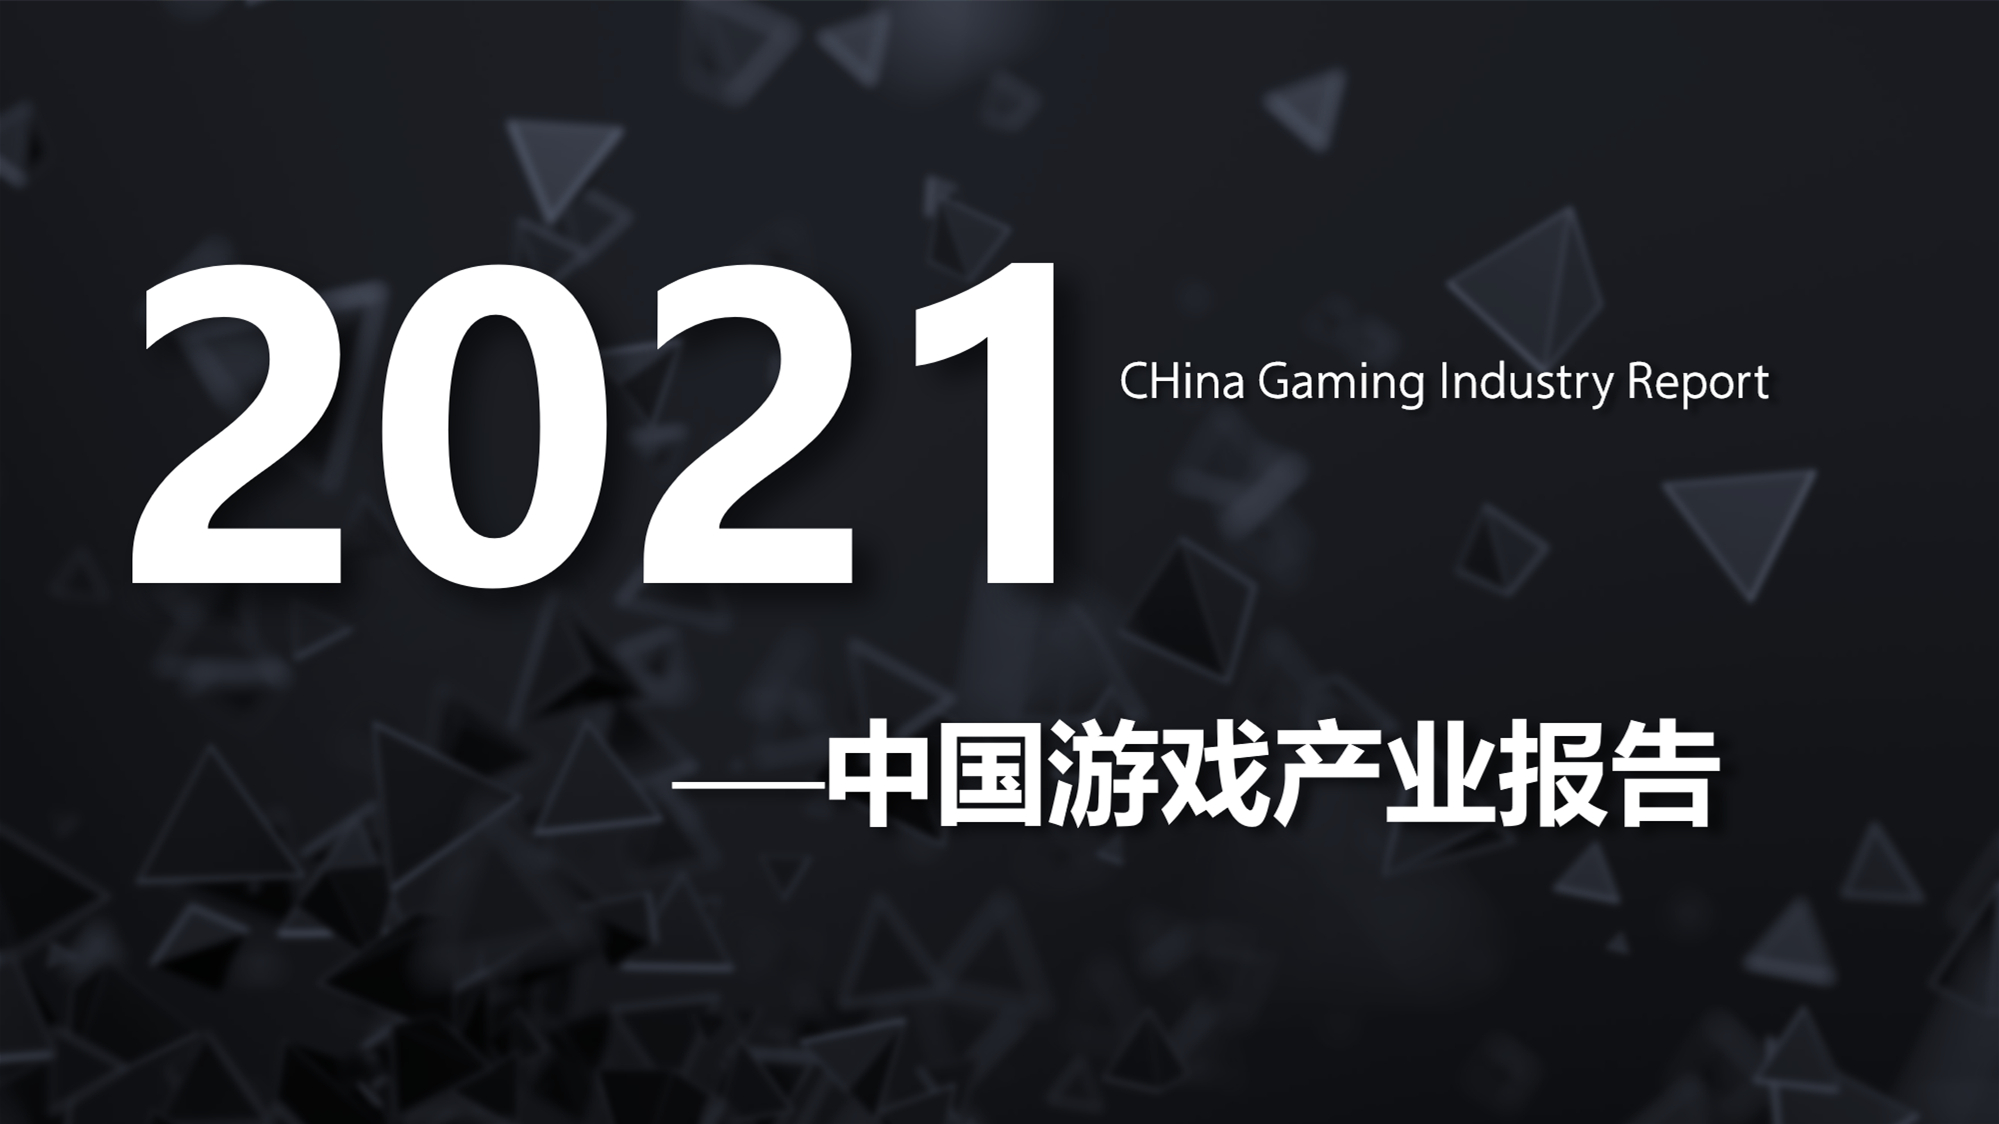 《2023年中国游戏产业报告》正式发布 | 游戏大观 | GameLook.com.cn